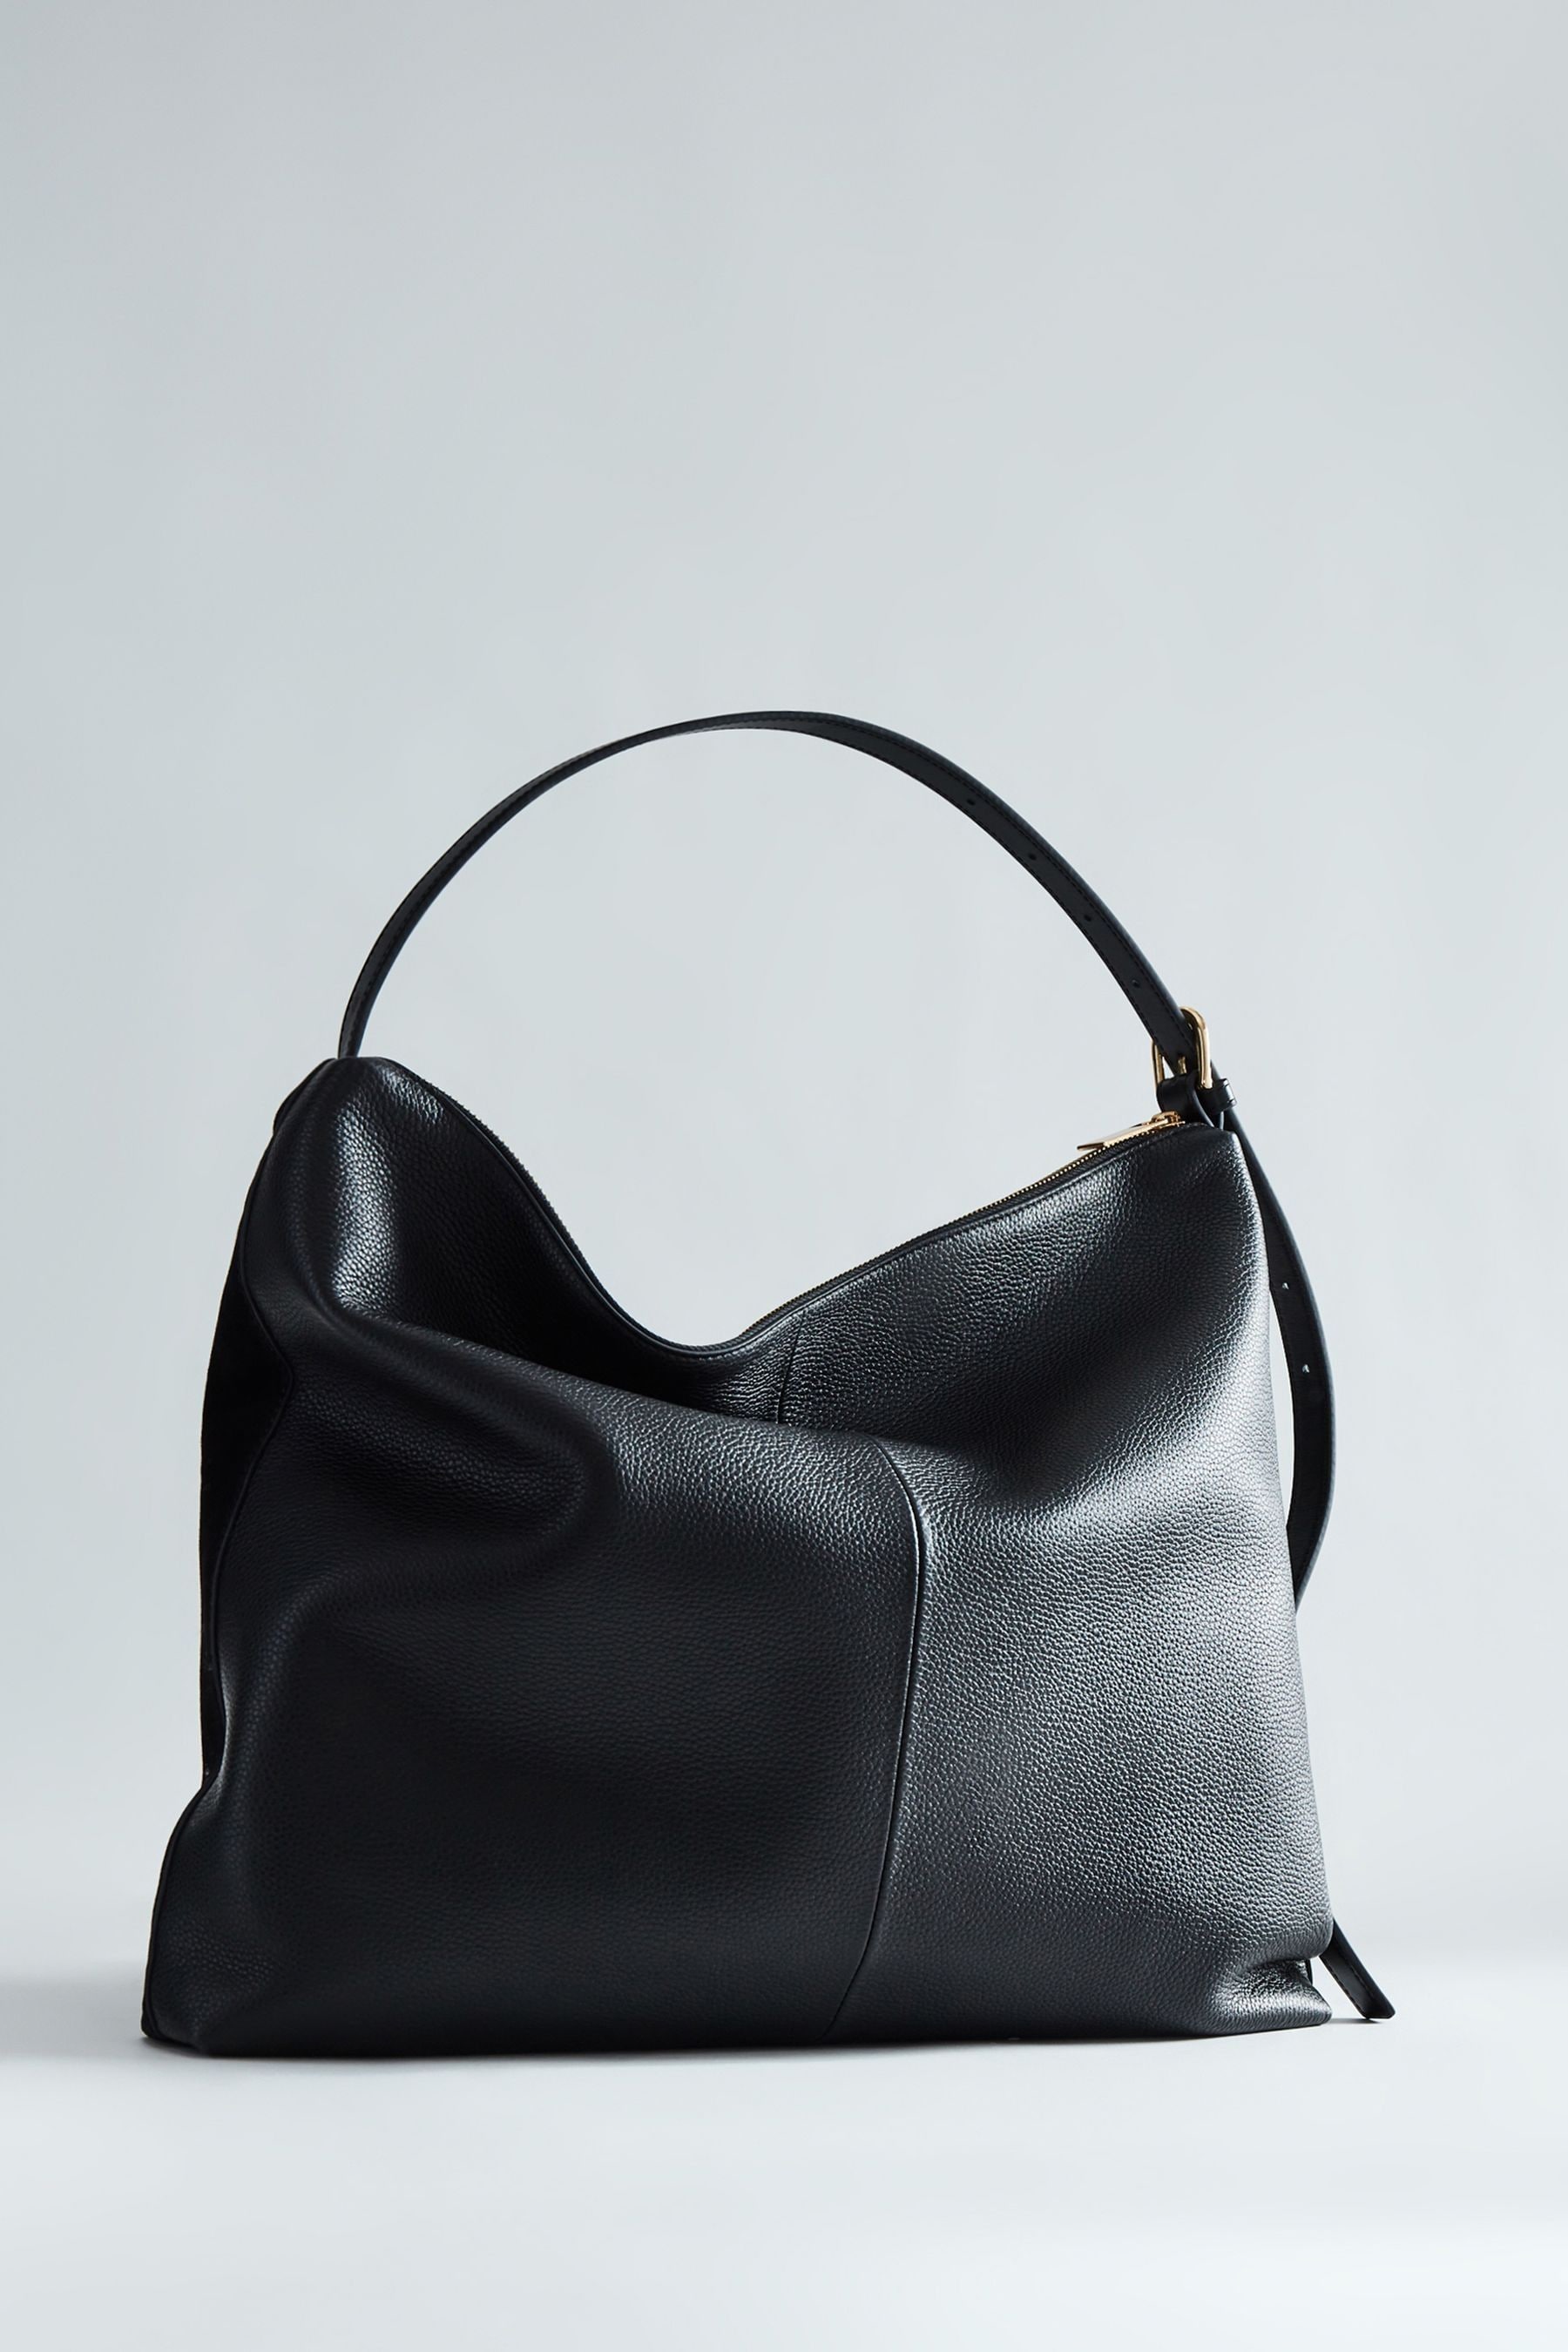 Reiss Vigo - Black Leather Suede Handbag, One